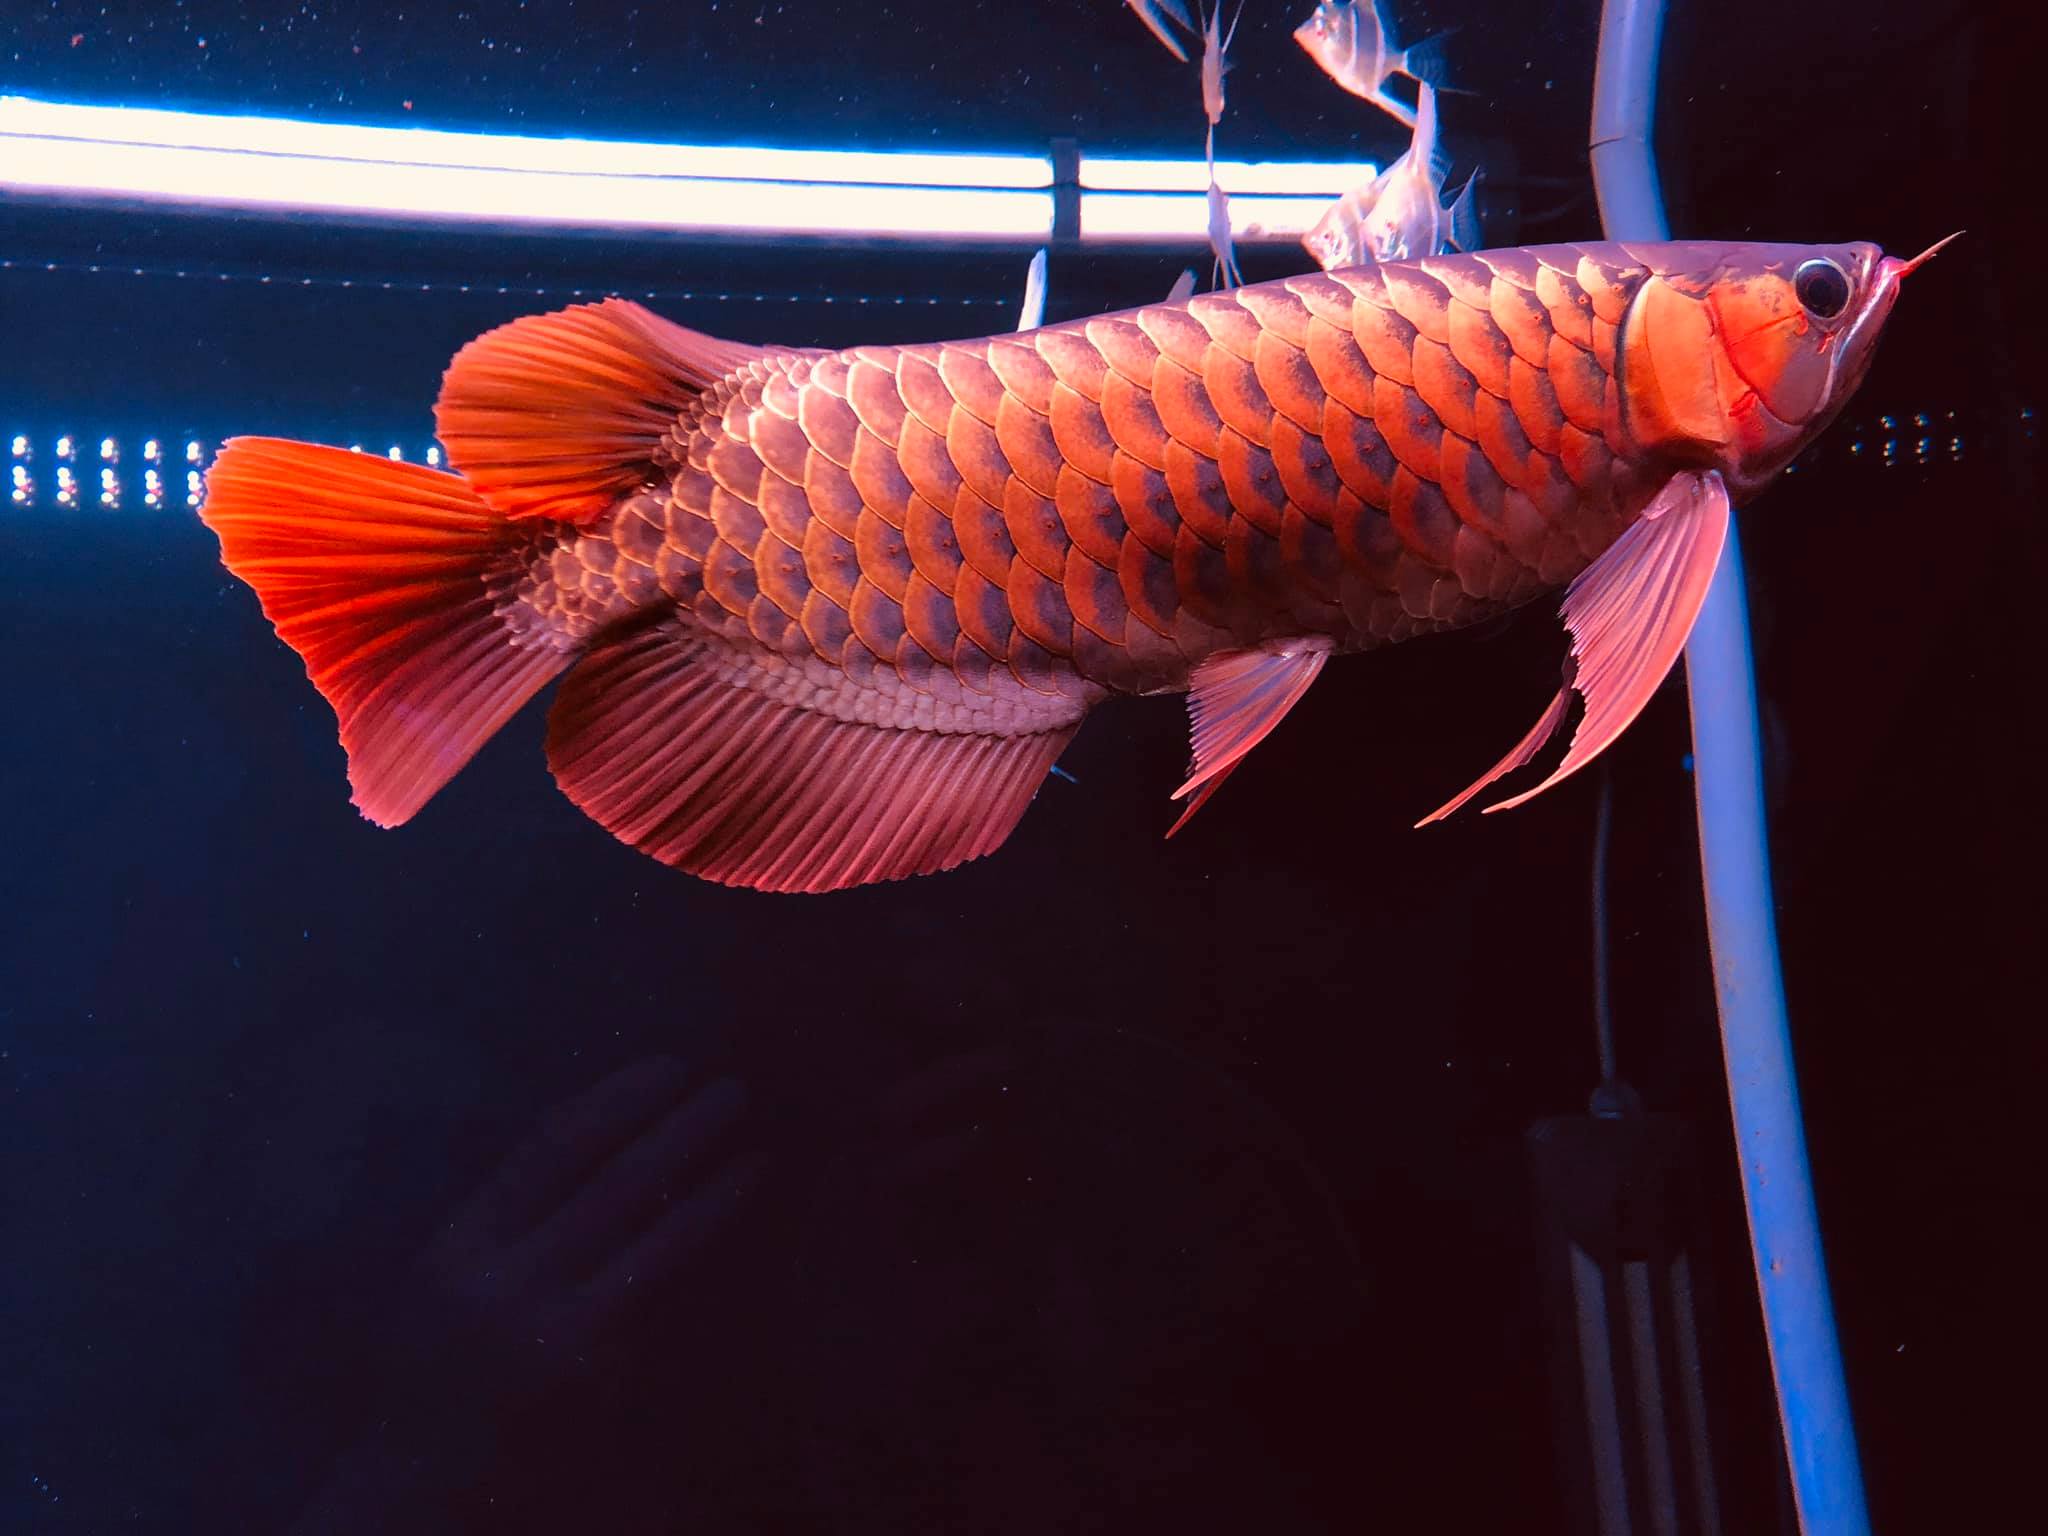 Đèn uv bể cá nên bật bao lâu thì tốt?